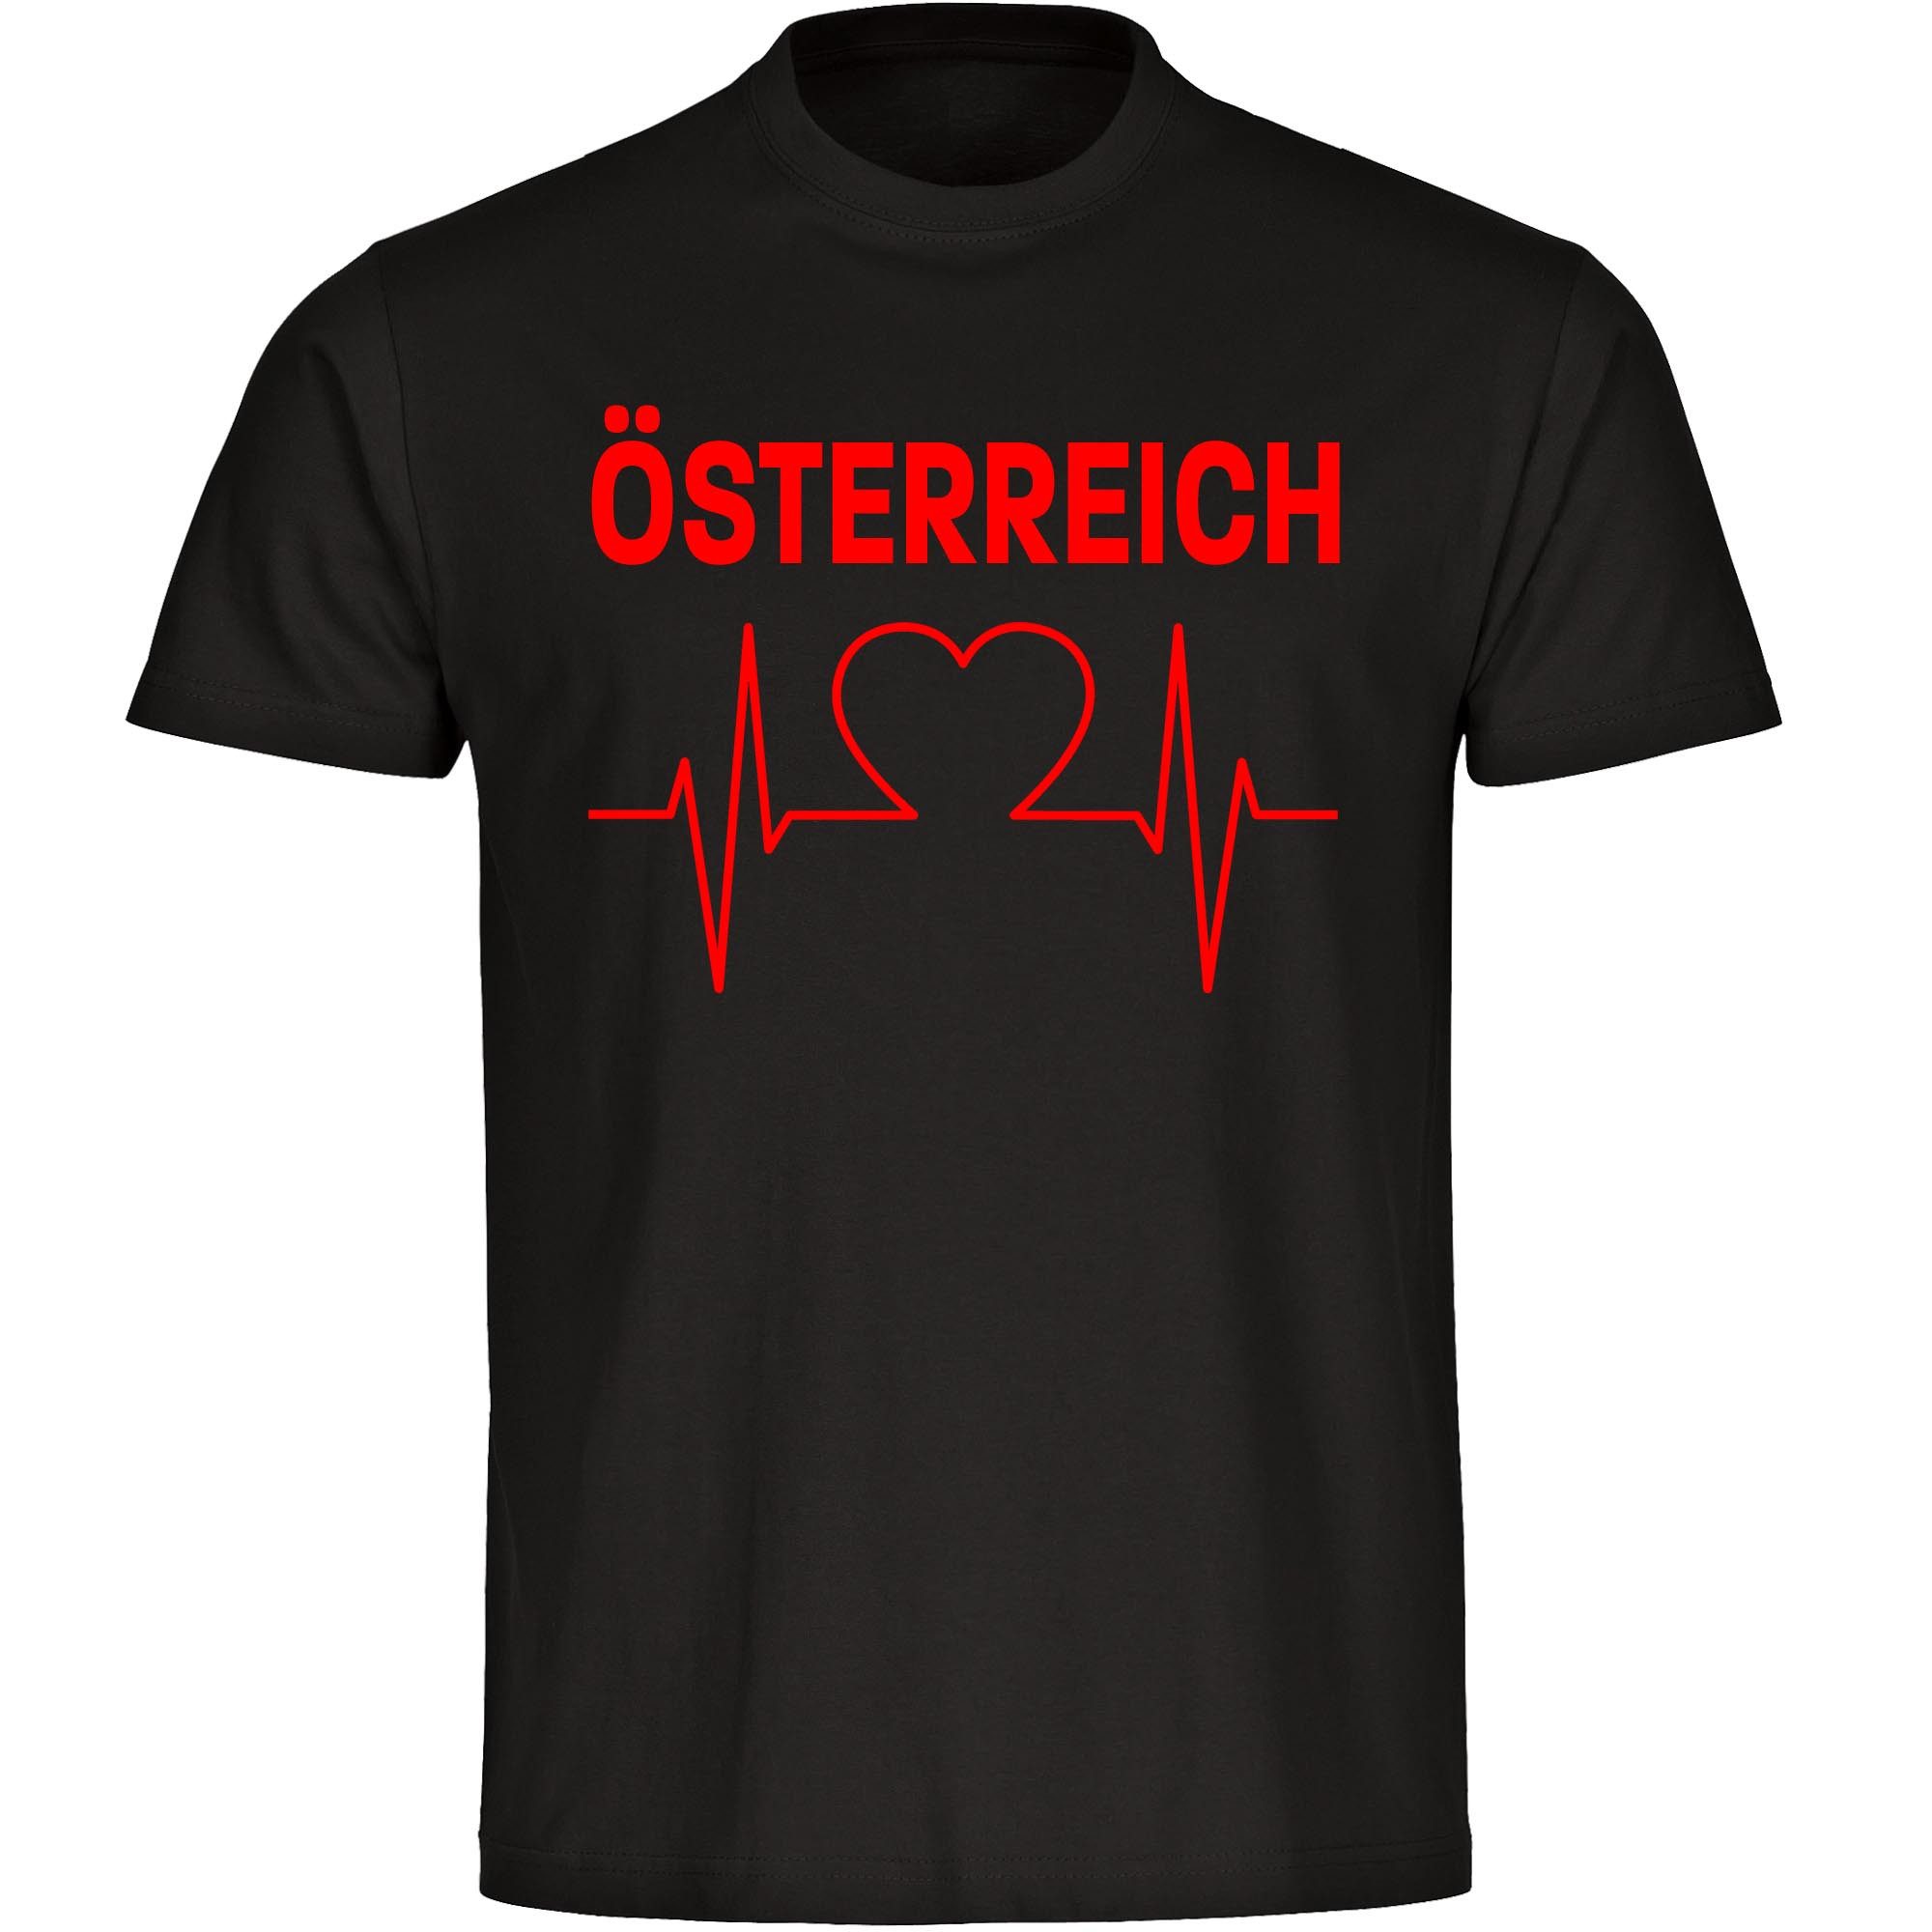 multifanshop T-Shirt Herren Österreich - Herzschlag - Männer